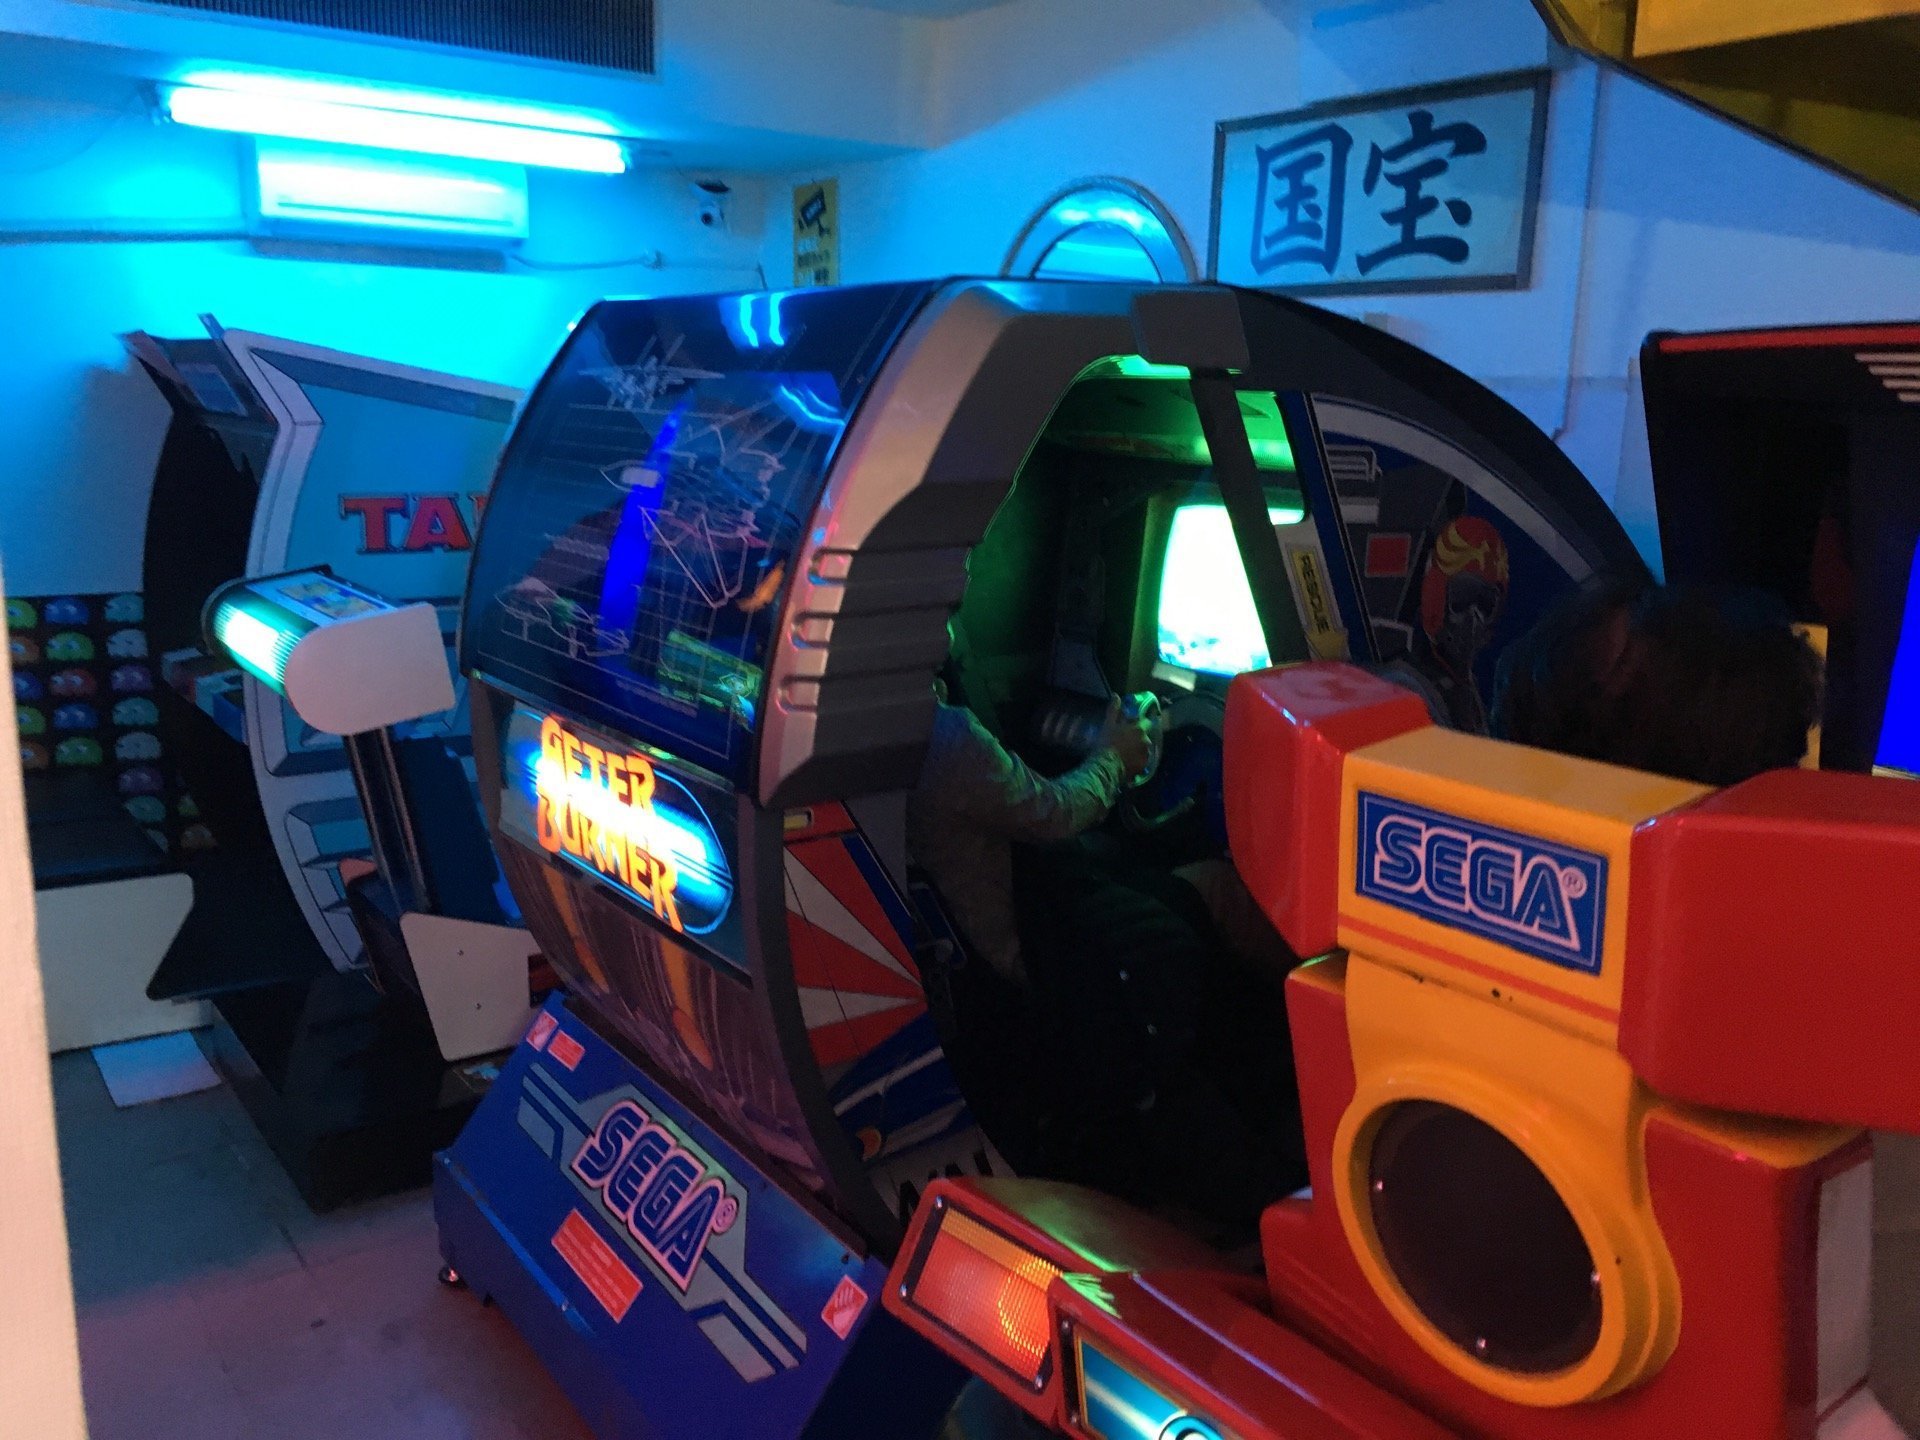 大阪 新世界のレトロゲームセンター ザリガニ 貴重な 国宝級 ラインナップの数々と 各所で見える 店の想い Blog 19xx